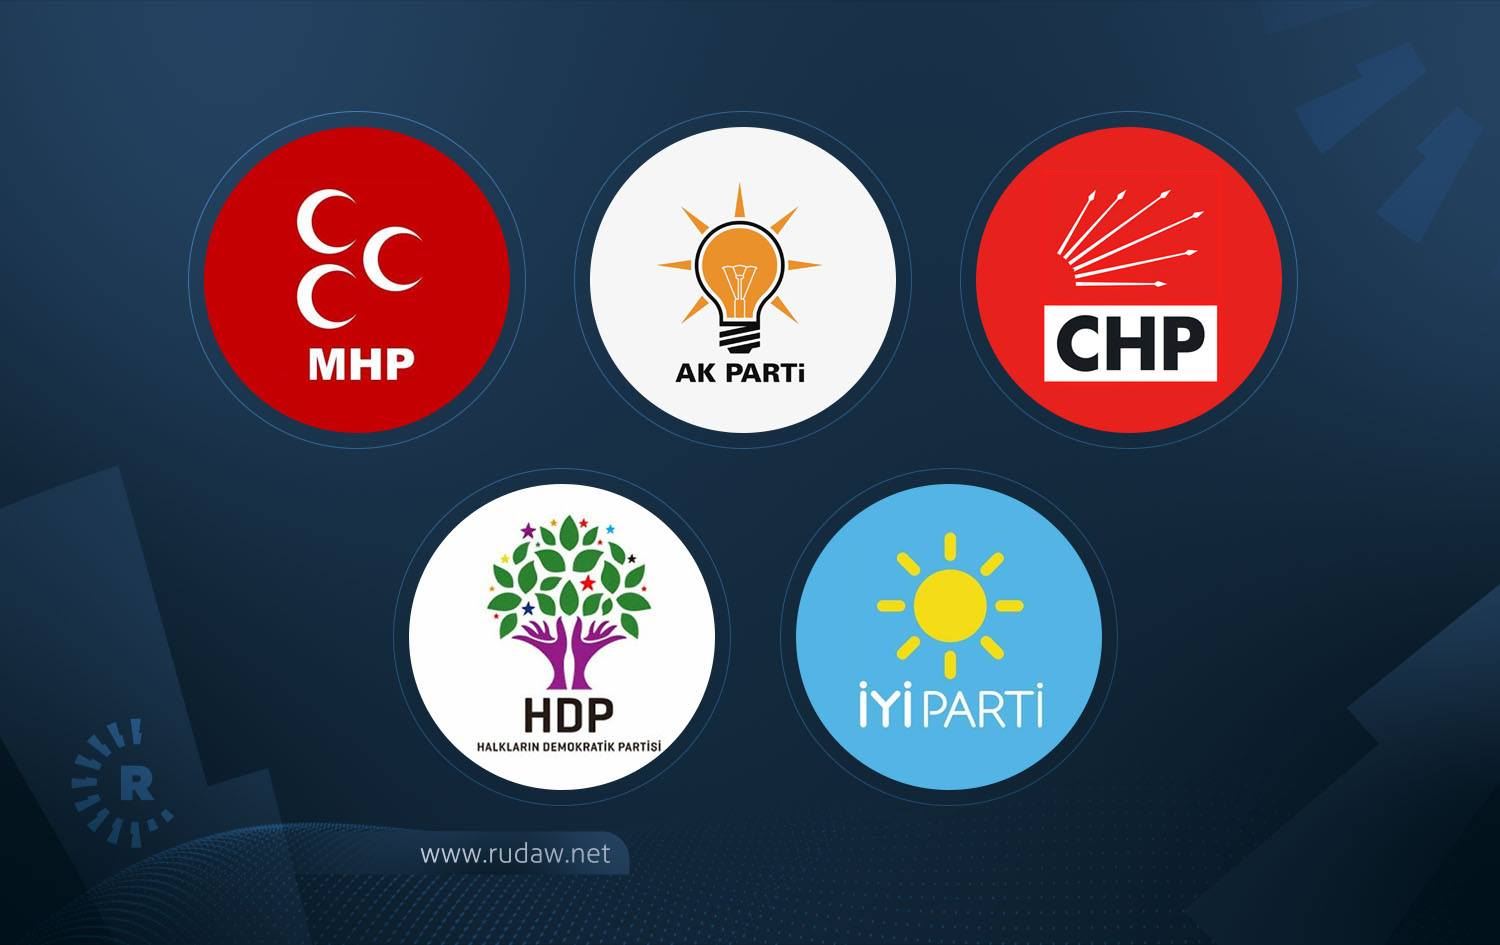 HDP, AK Parti ve İyi Parti'nin üye sayısı arttı,... | Rudaw.net